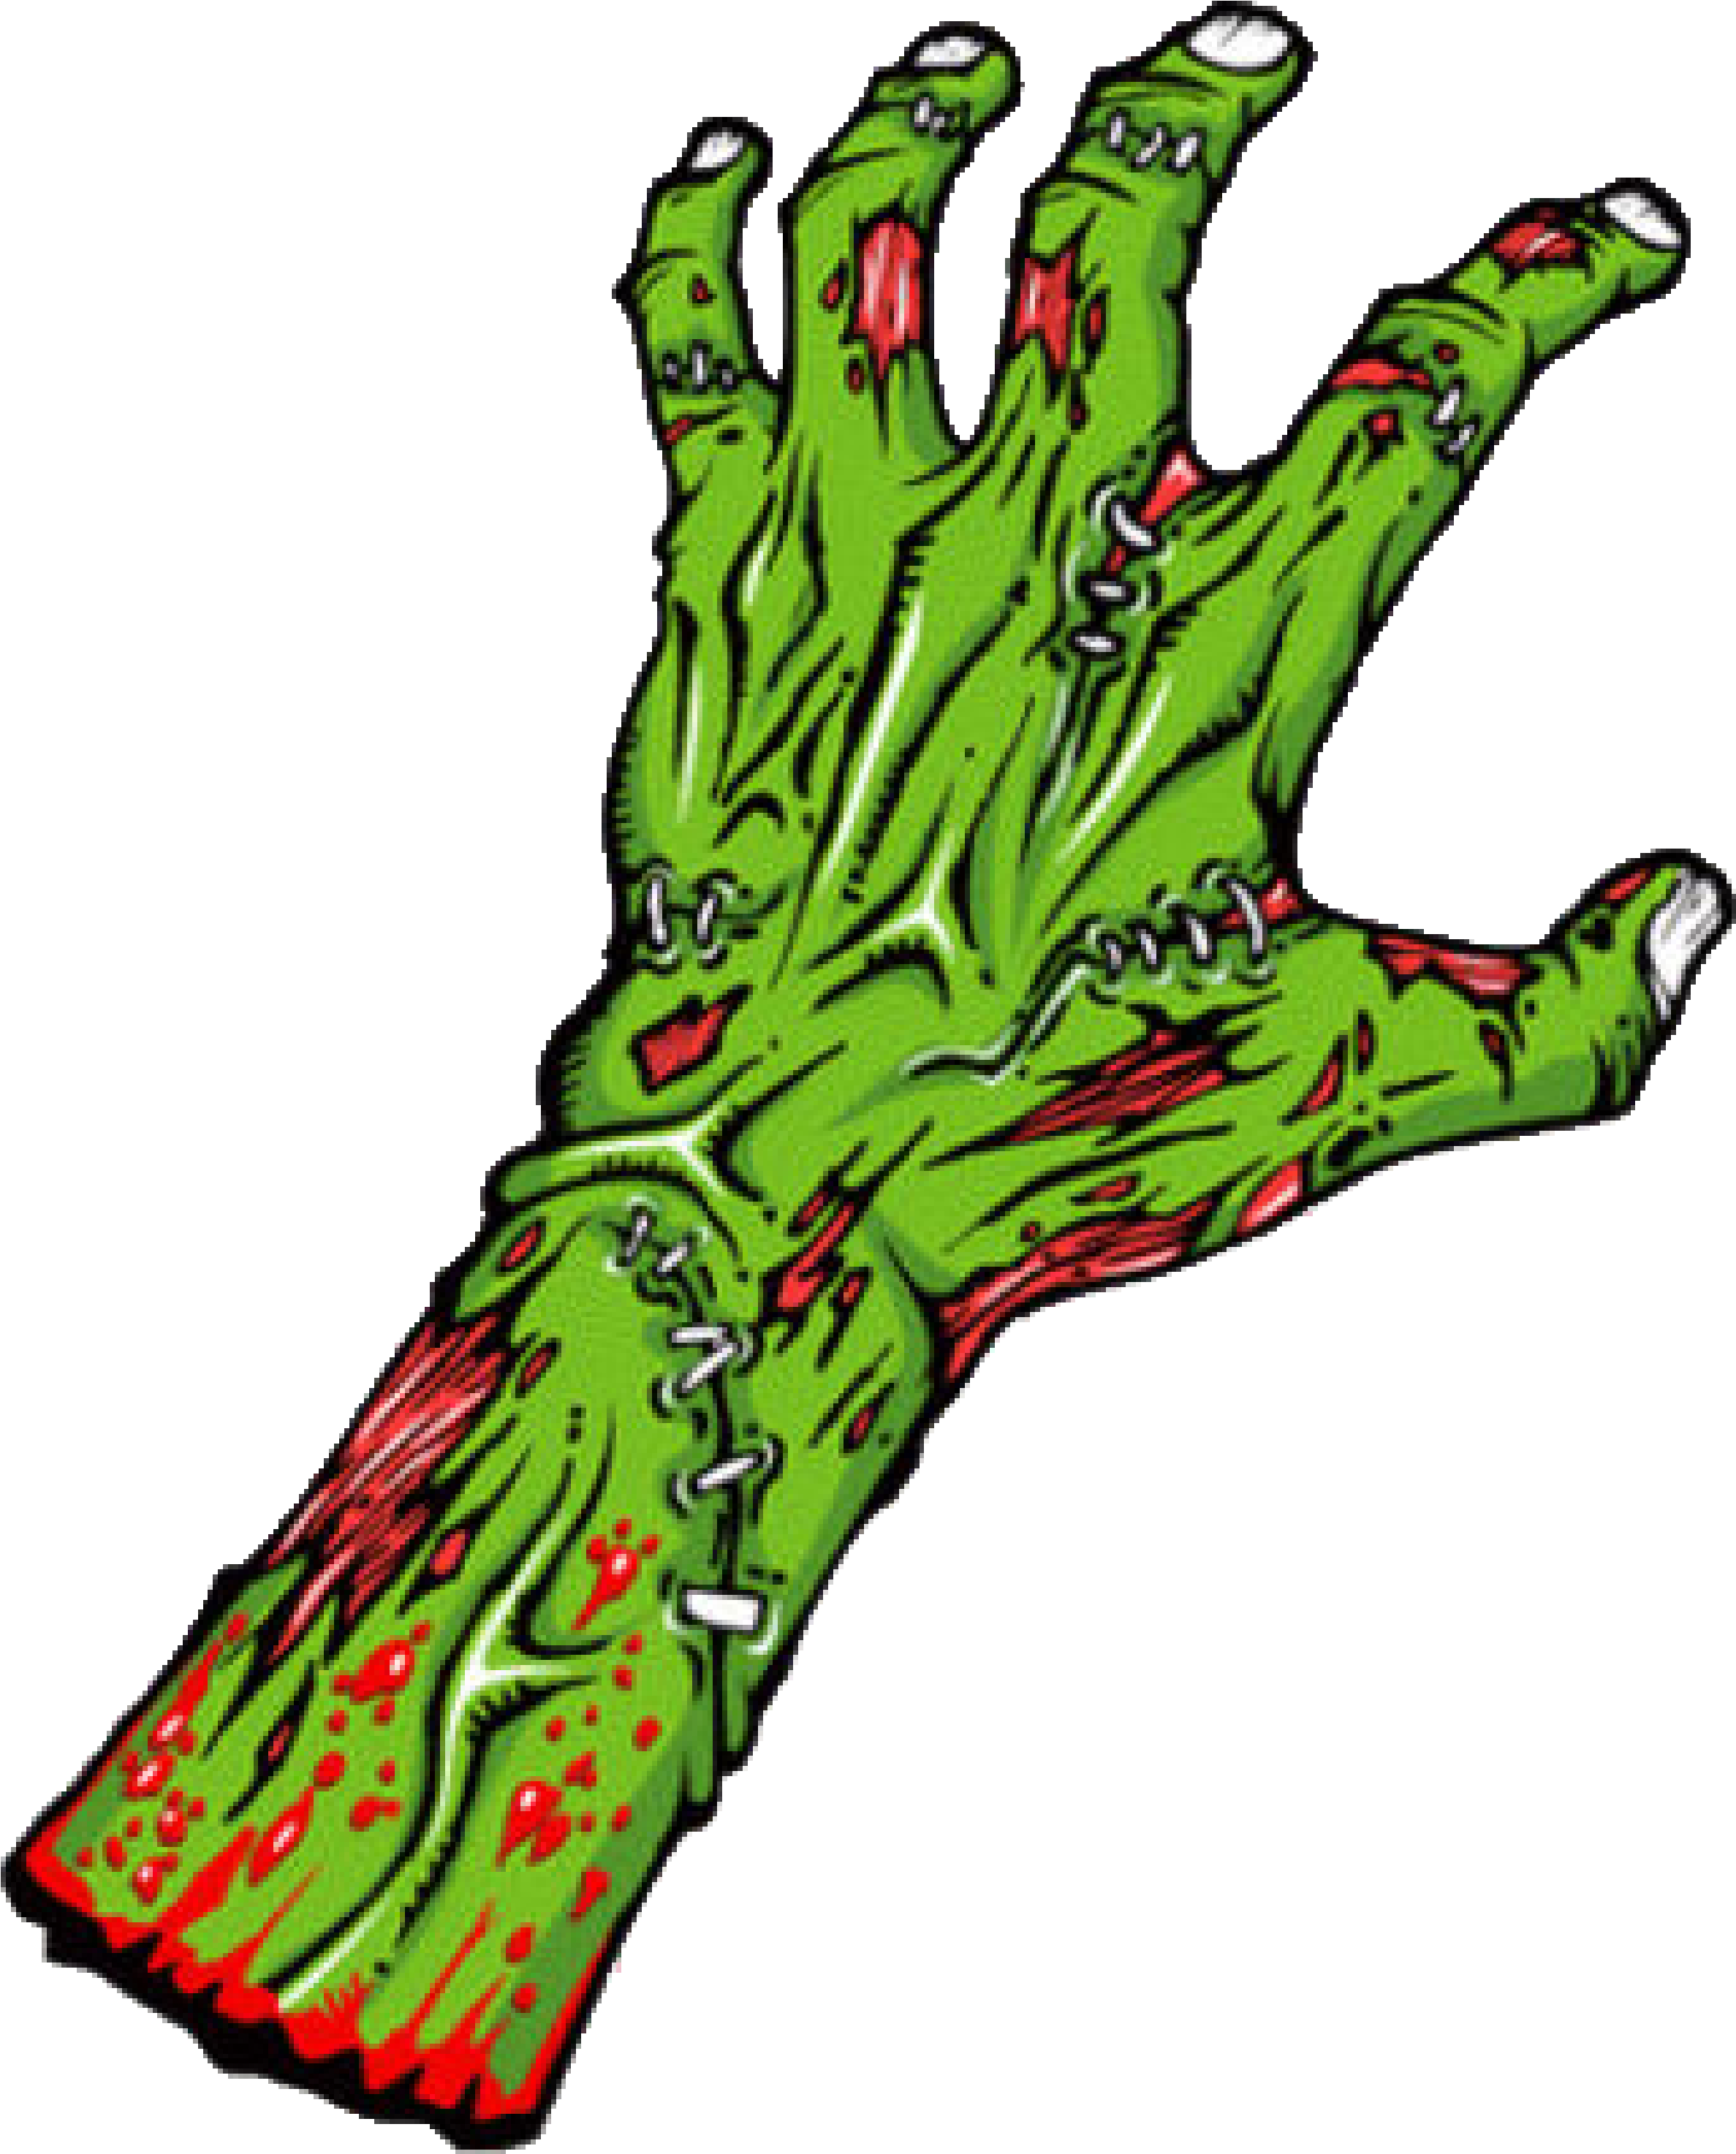 Zombie Hand (2456x3114)